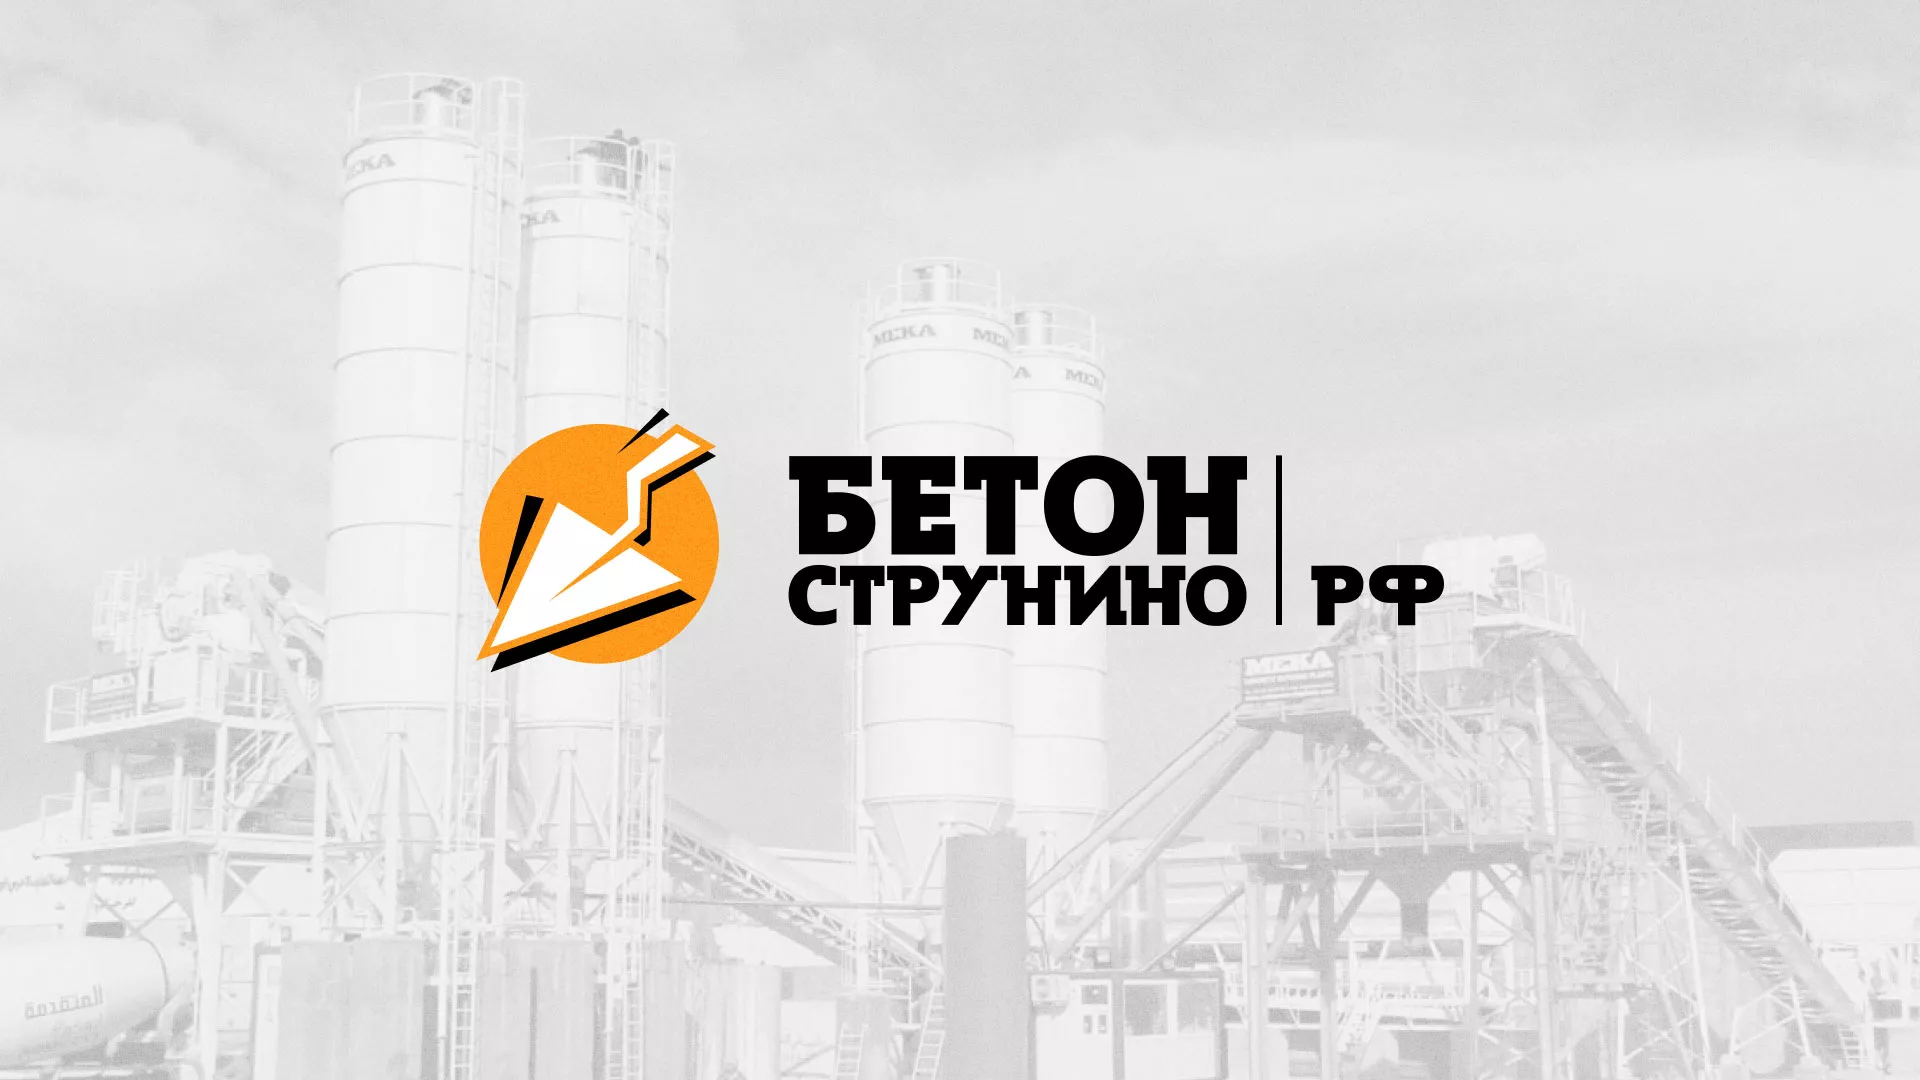 Разработка логотипа для бетонного завода в Беломорске